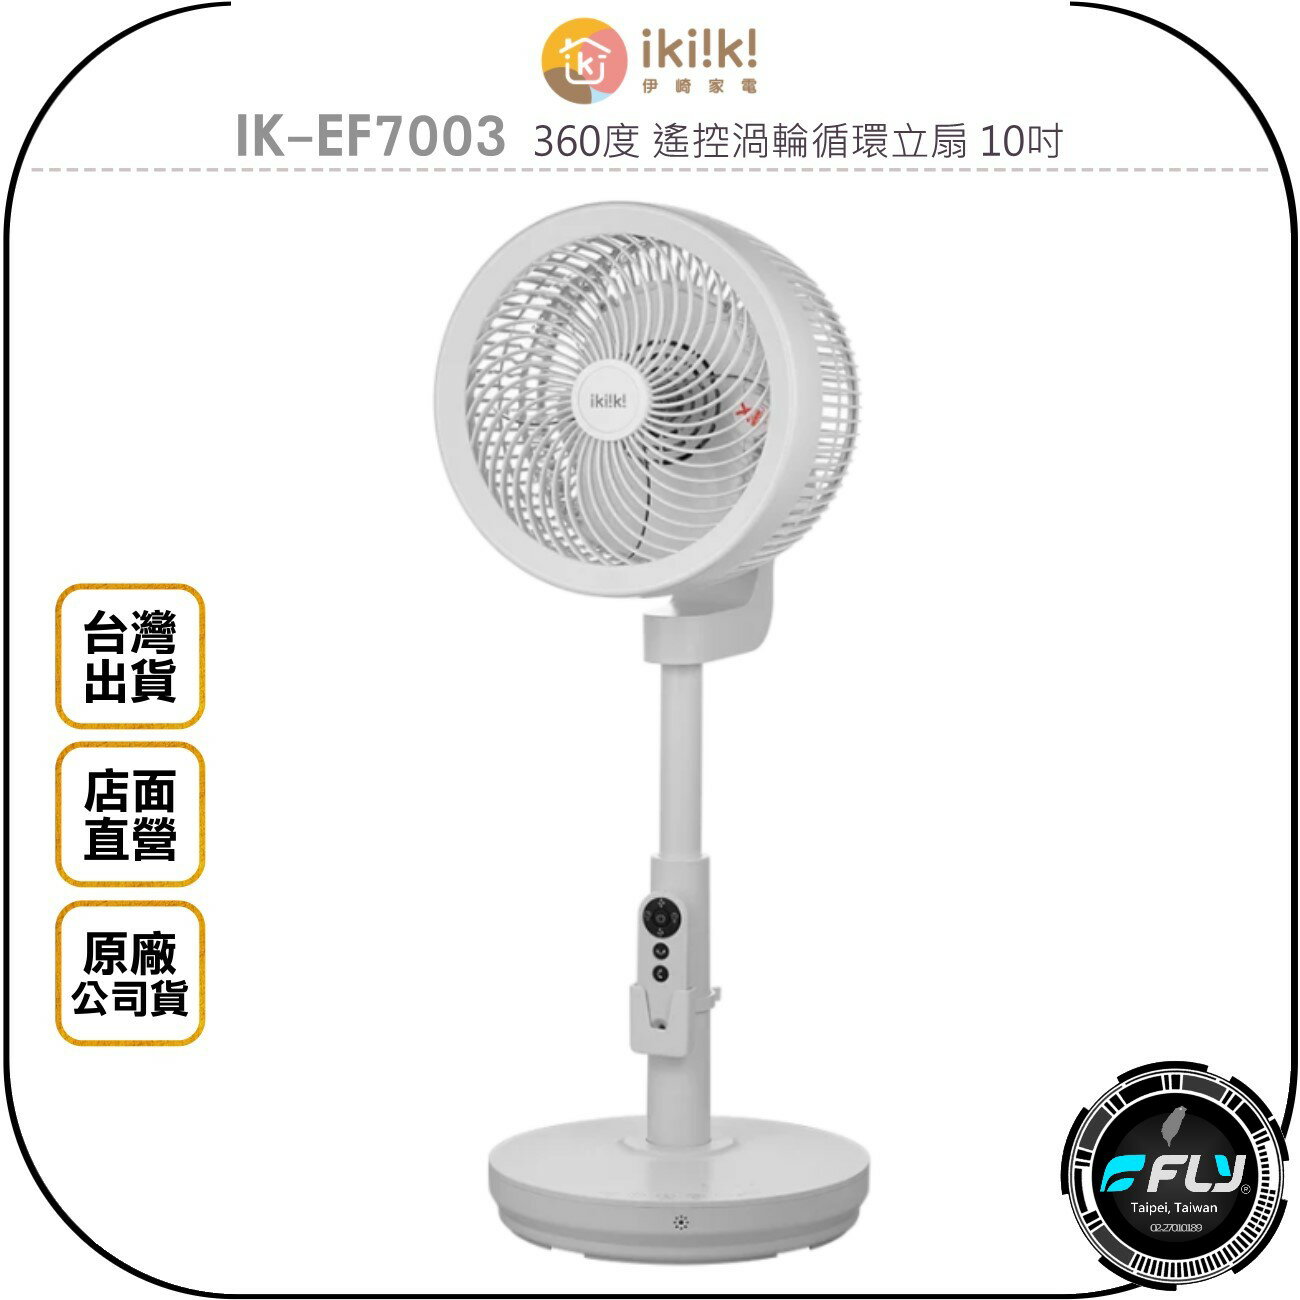 《飛翔無線3C》ikiiki 伊崎家電 IK-EF7003 360度 遙控渦輪循環立扇 10吋◉台灣公司貨◉家用風扇